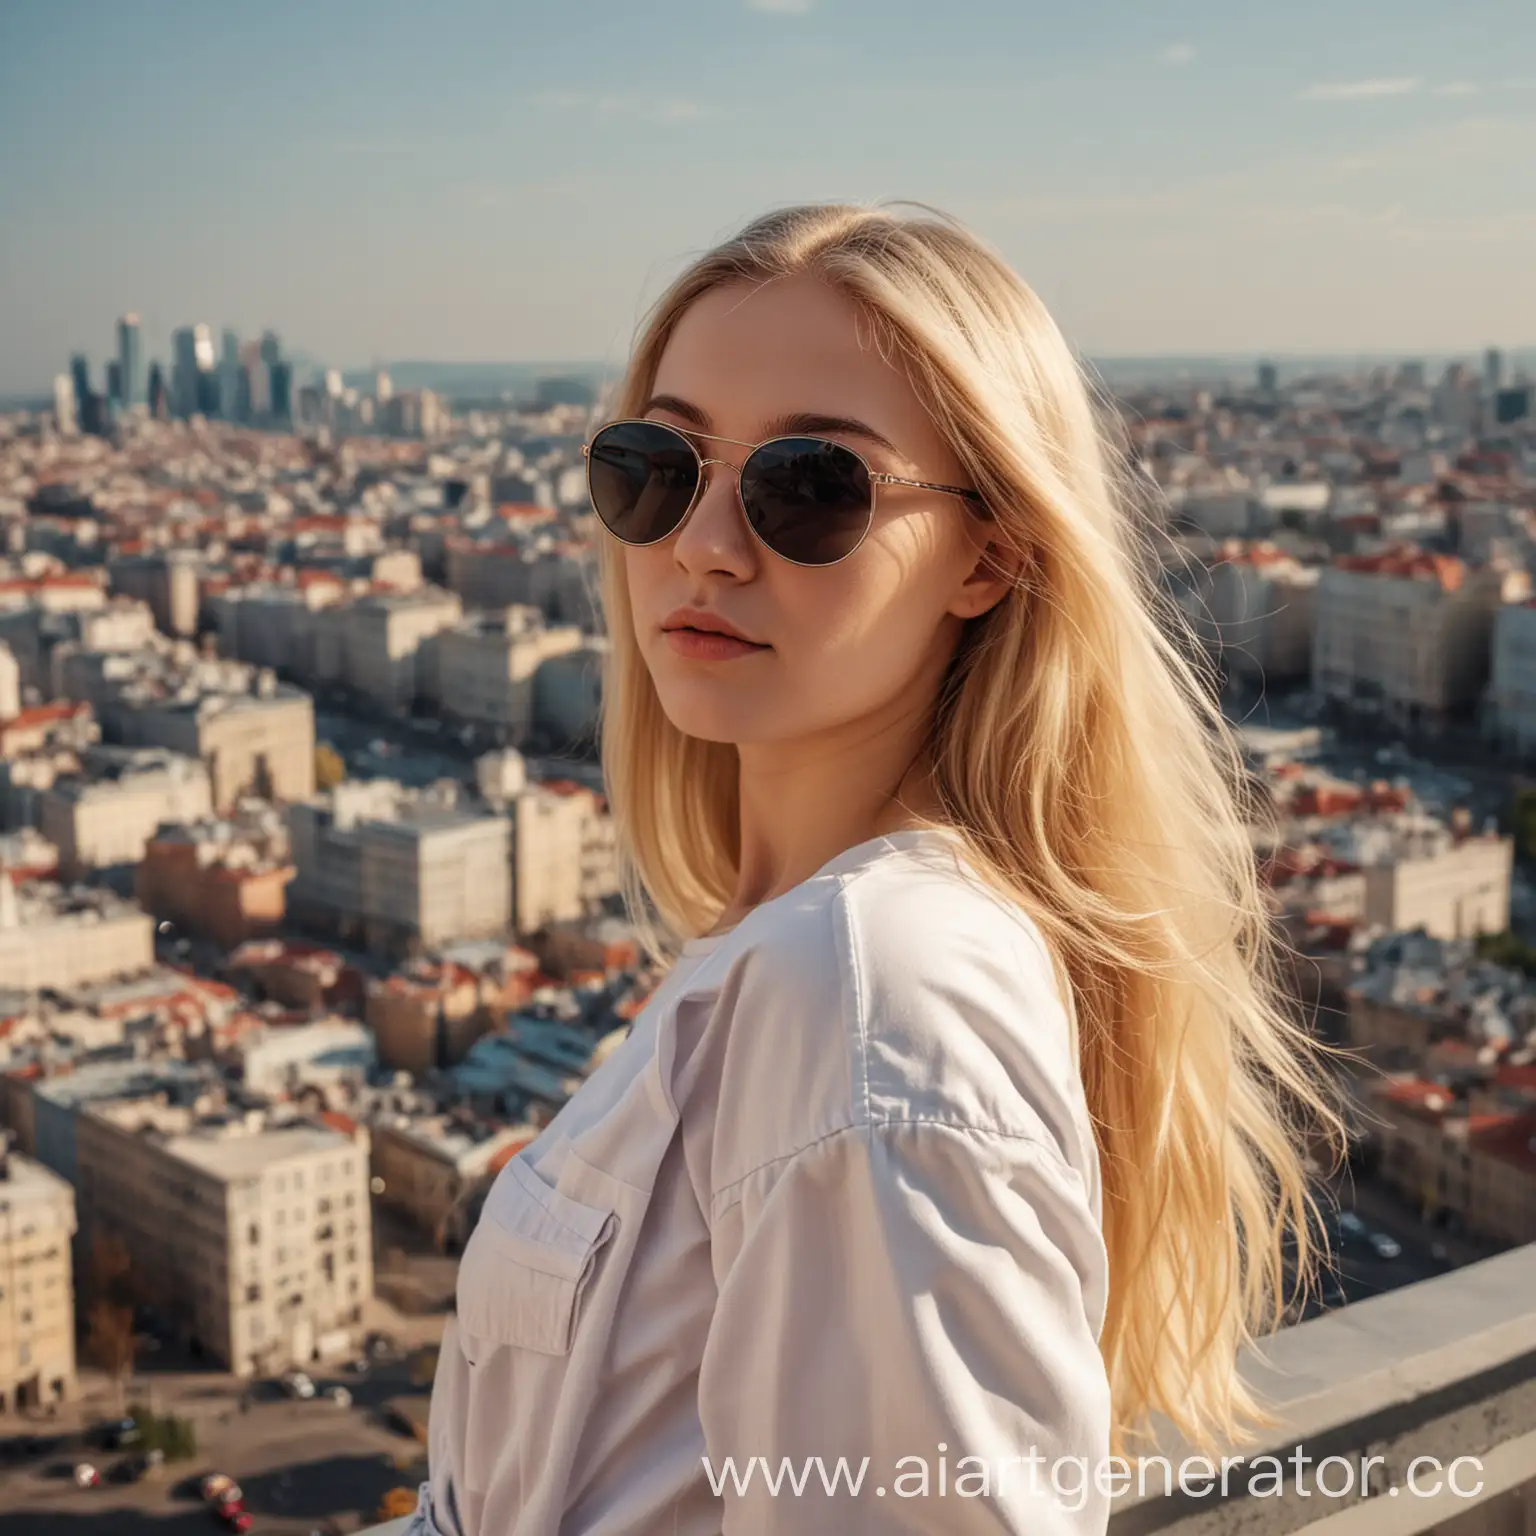 красивая девушка блондинка с длинными волосами стоит полубоком в солнцезащитных очках в полный рост смотрит в даль на фоне красивого города
